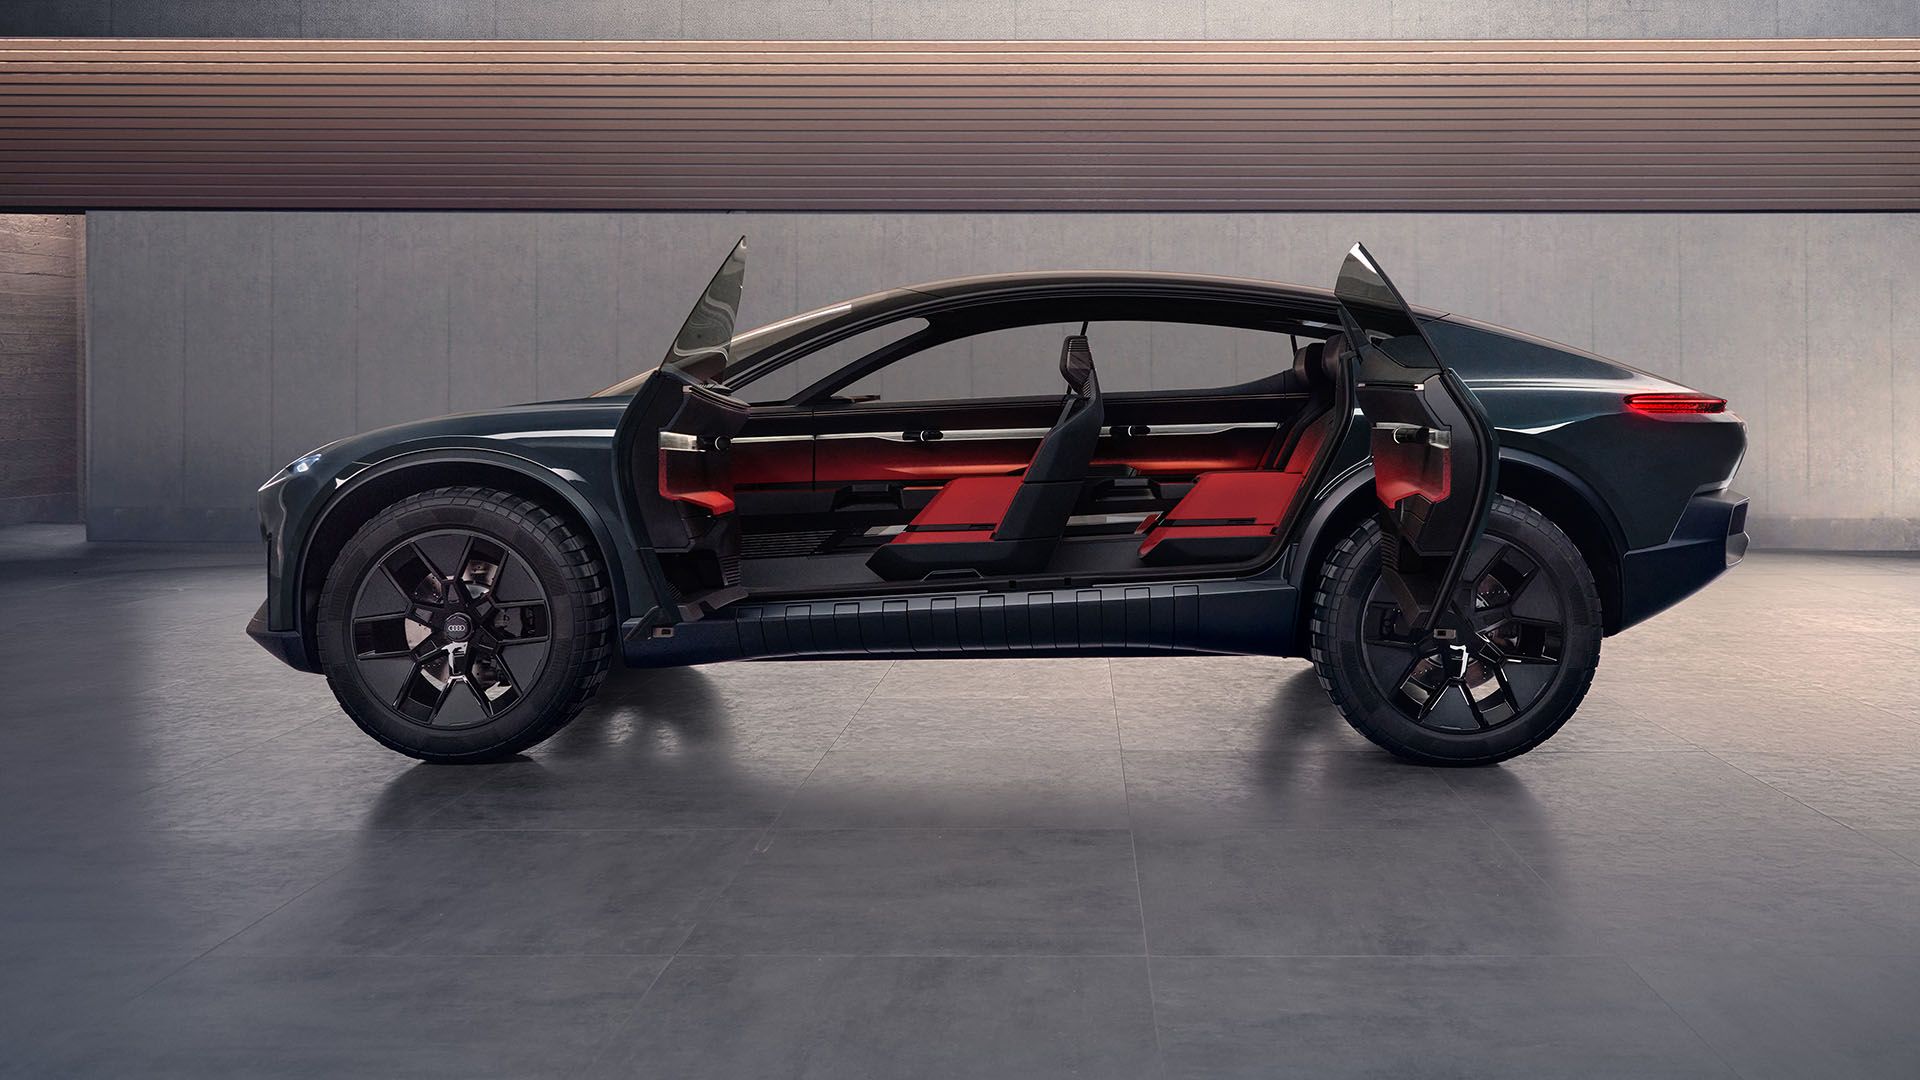 Audi activesphere concept’in kapıları, otomobilin içine göz atmaya izin verecek şekilde açıktır.